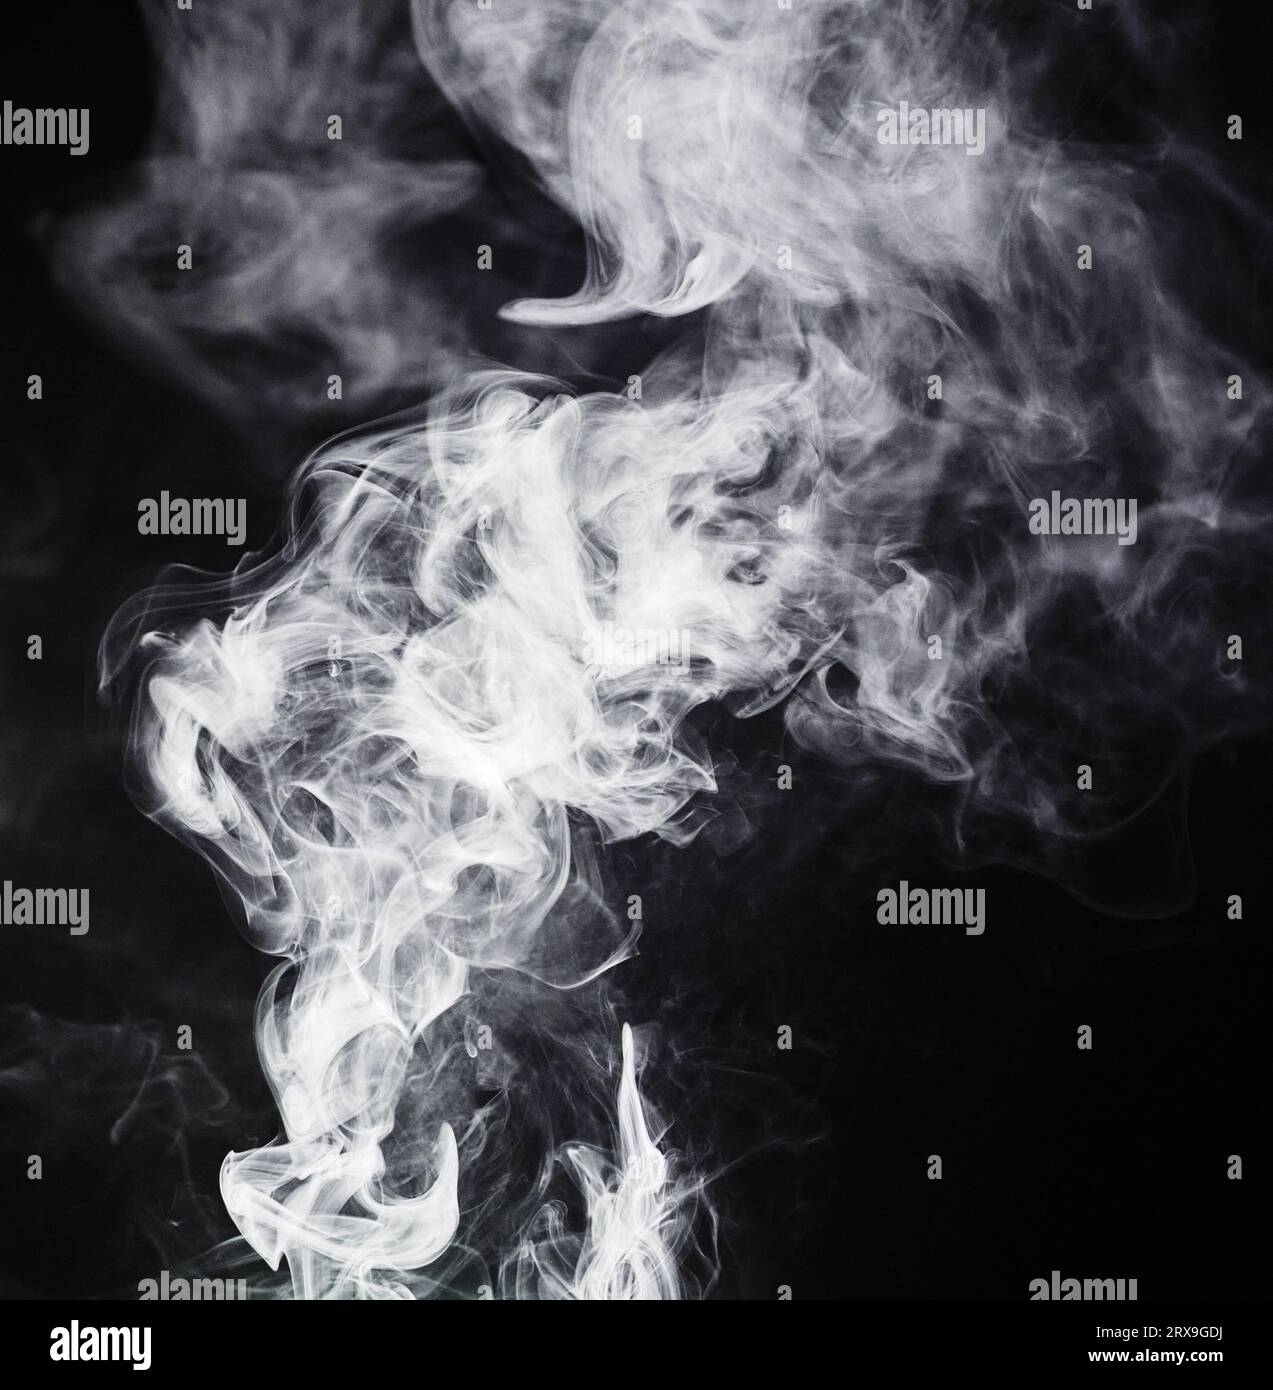 VAPE, motif blanc et fumée sur fond noir avec texture, maquette et art abstrait ou design de gaz créatif. Nuage de cigarette, fumée et brouillard dedans Banque D'Images